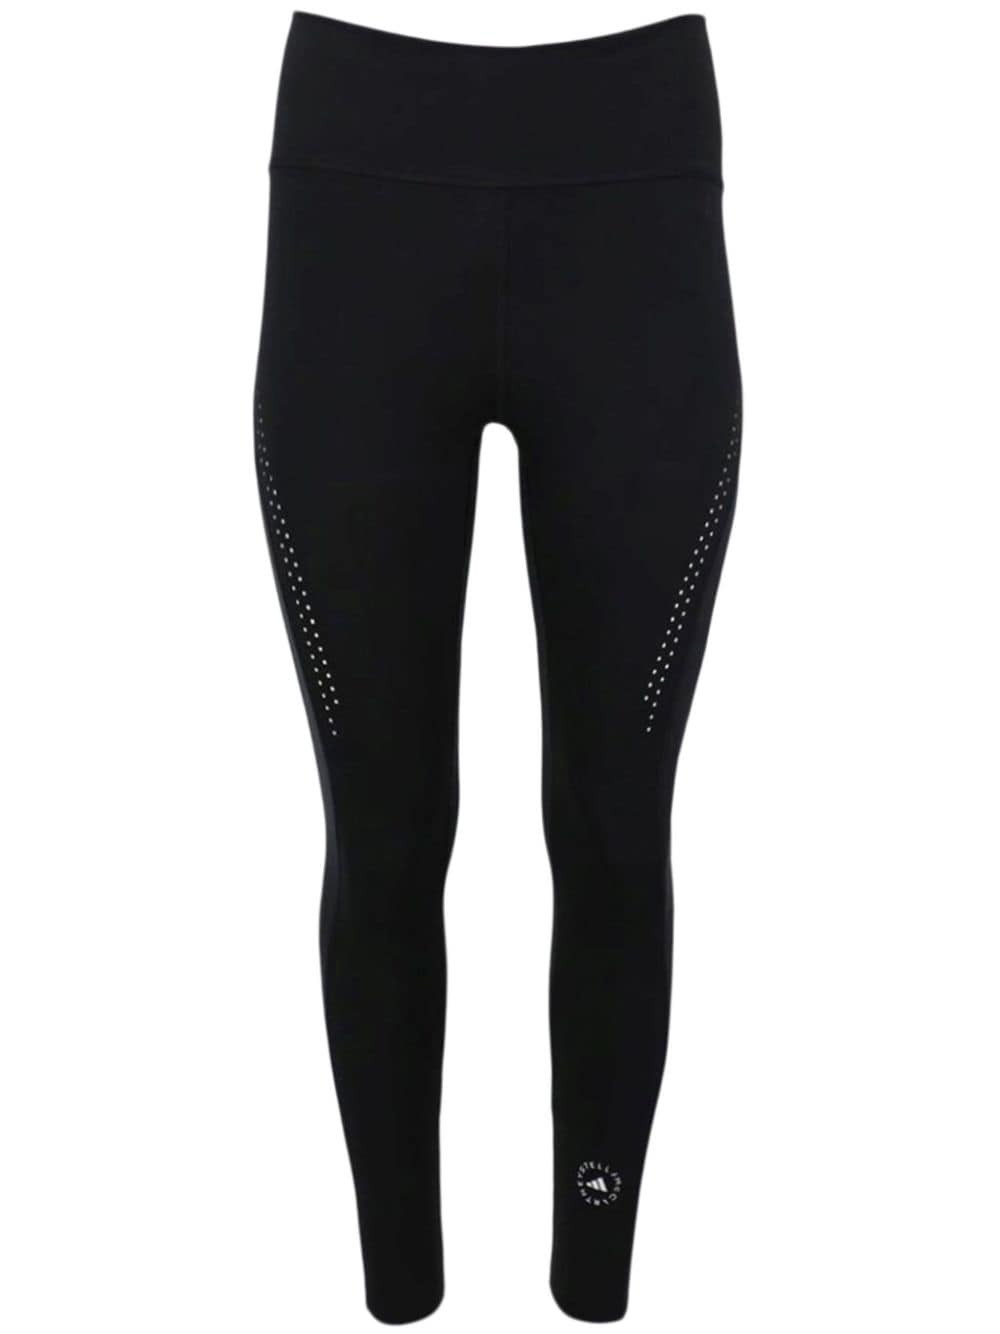 Training leggings Adidas by Stella McCartney Tpr ib6796-black